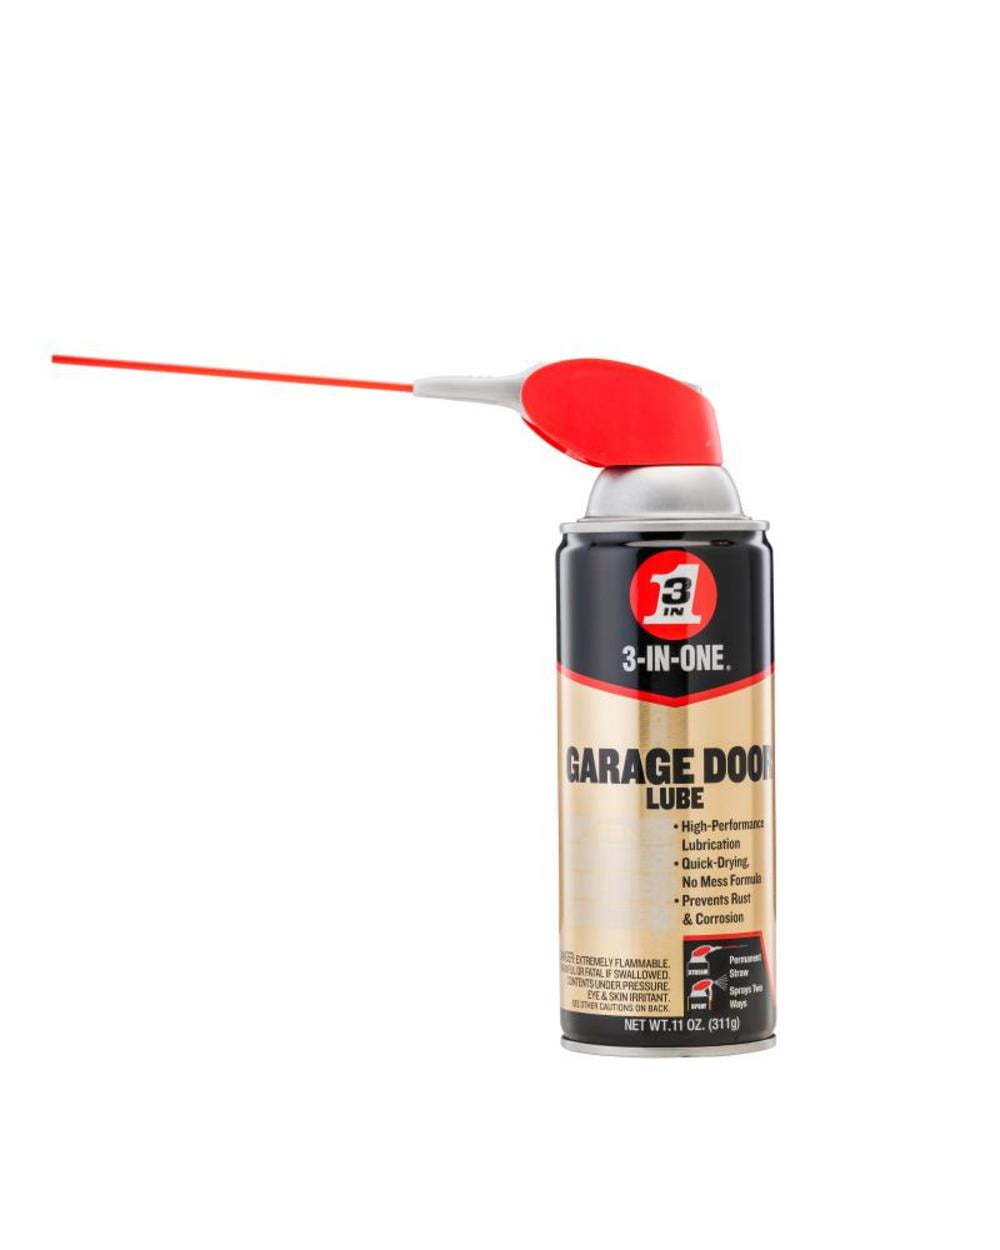 Blaster Garage Door Spray Lubricant 9.3 oz.